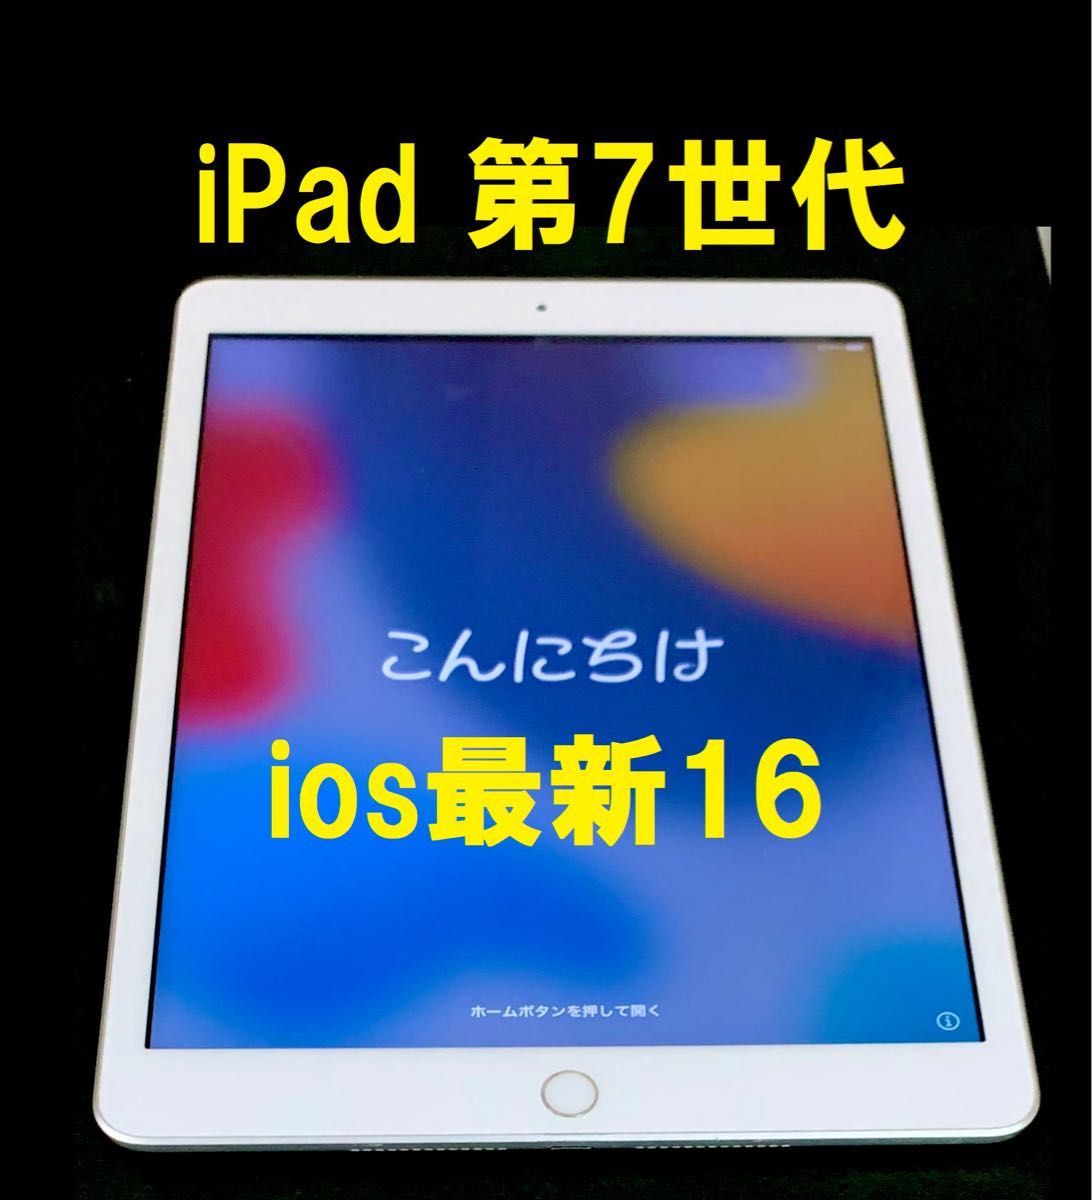 ios最新16 アップル iPad 第7世代 指紋認証OK Wi-Fi + C Apple Wi-Fi 